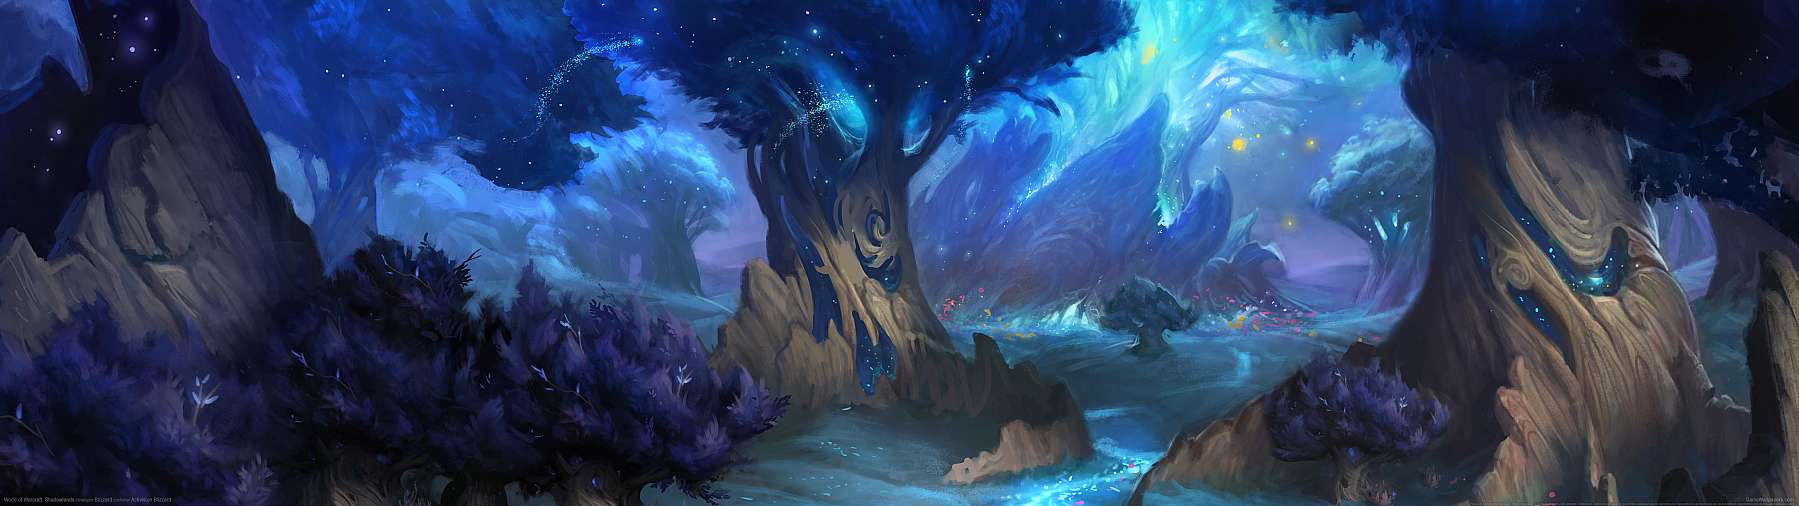 World of Warcraft: Shadowlands superwide achtergrond 05